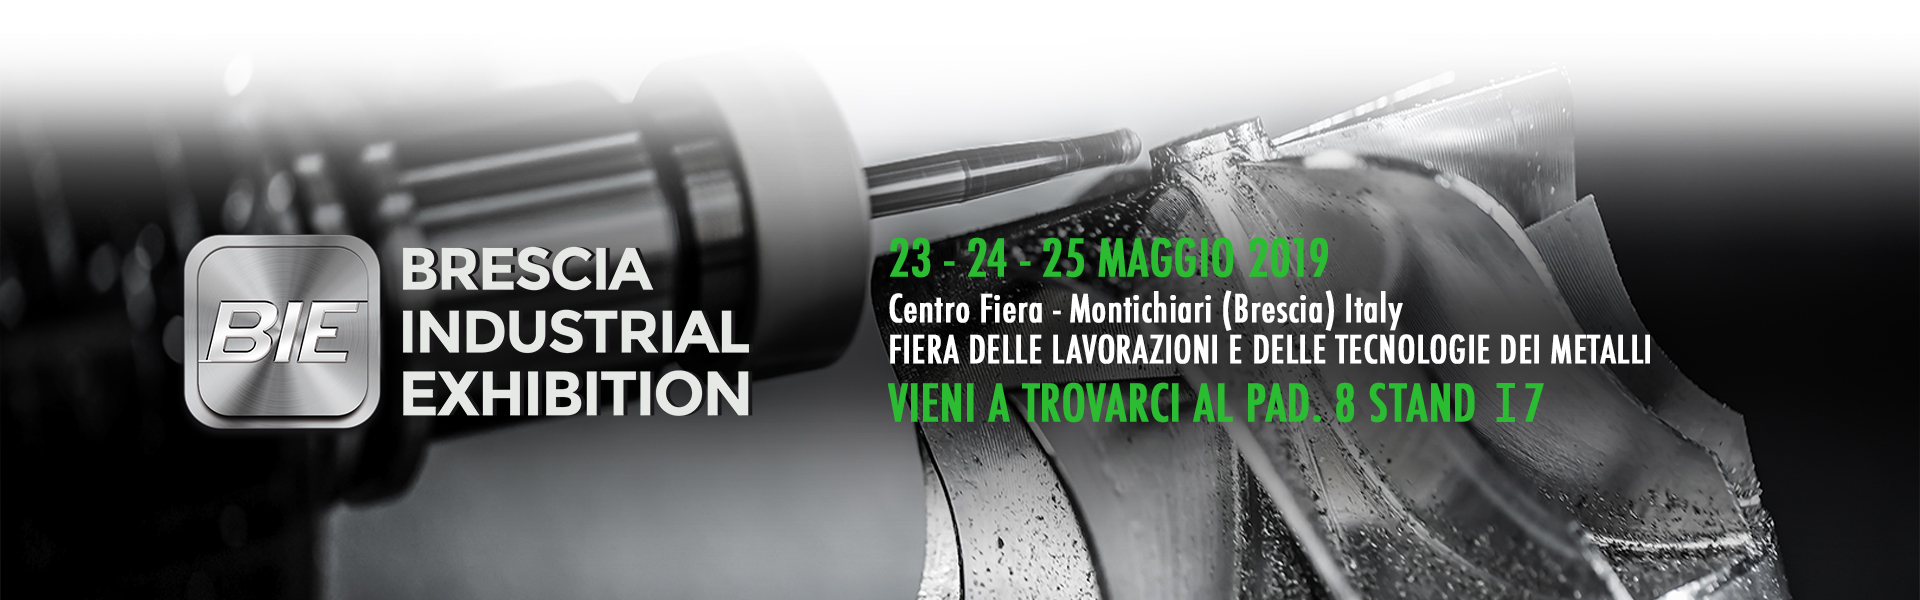 Personal Data partecipa al BIE (Brescia Industrial Exhibition)